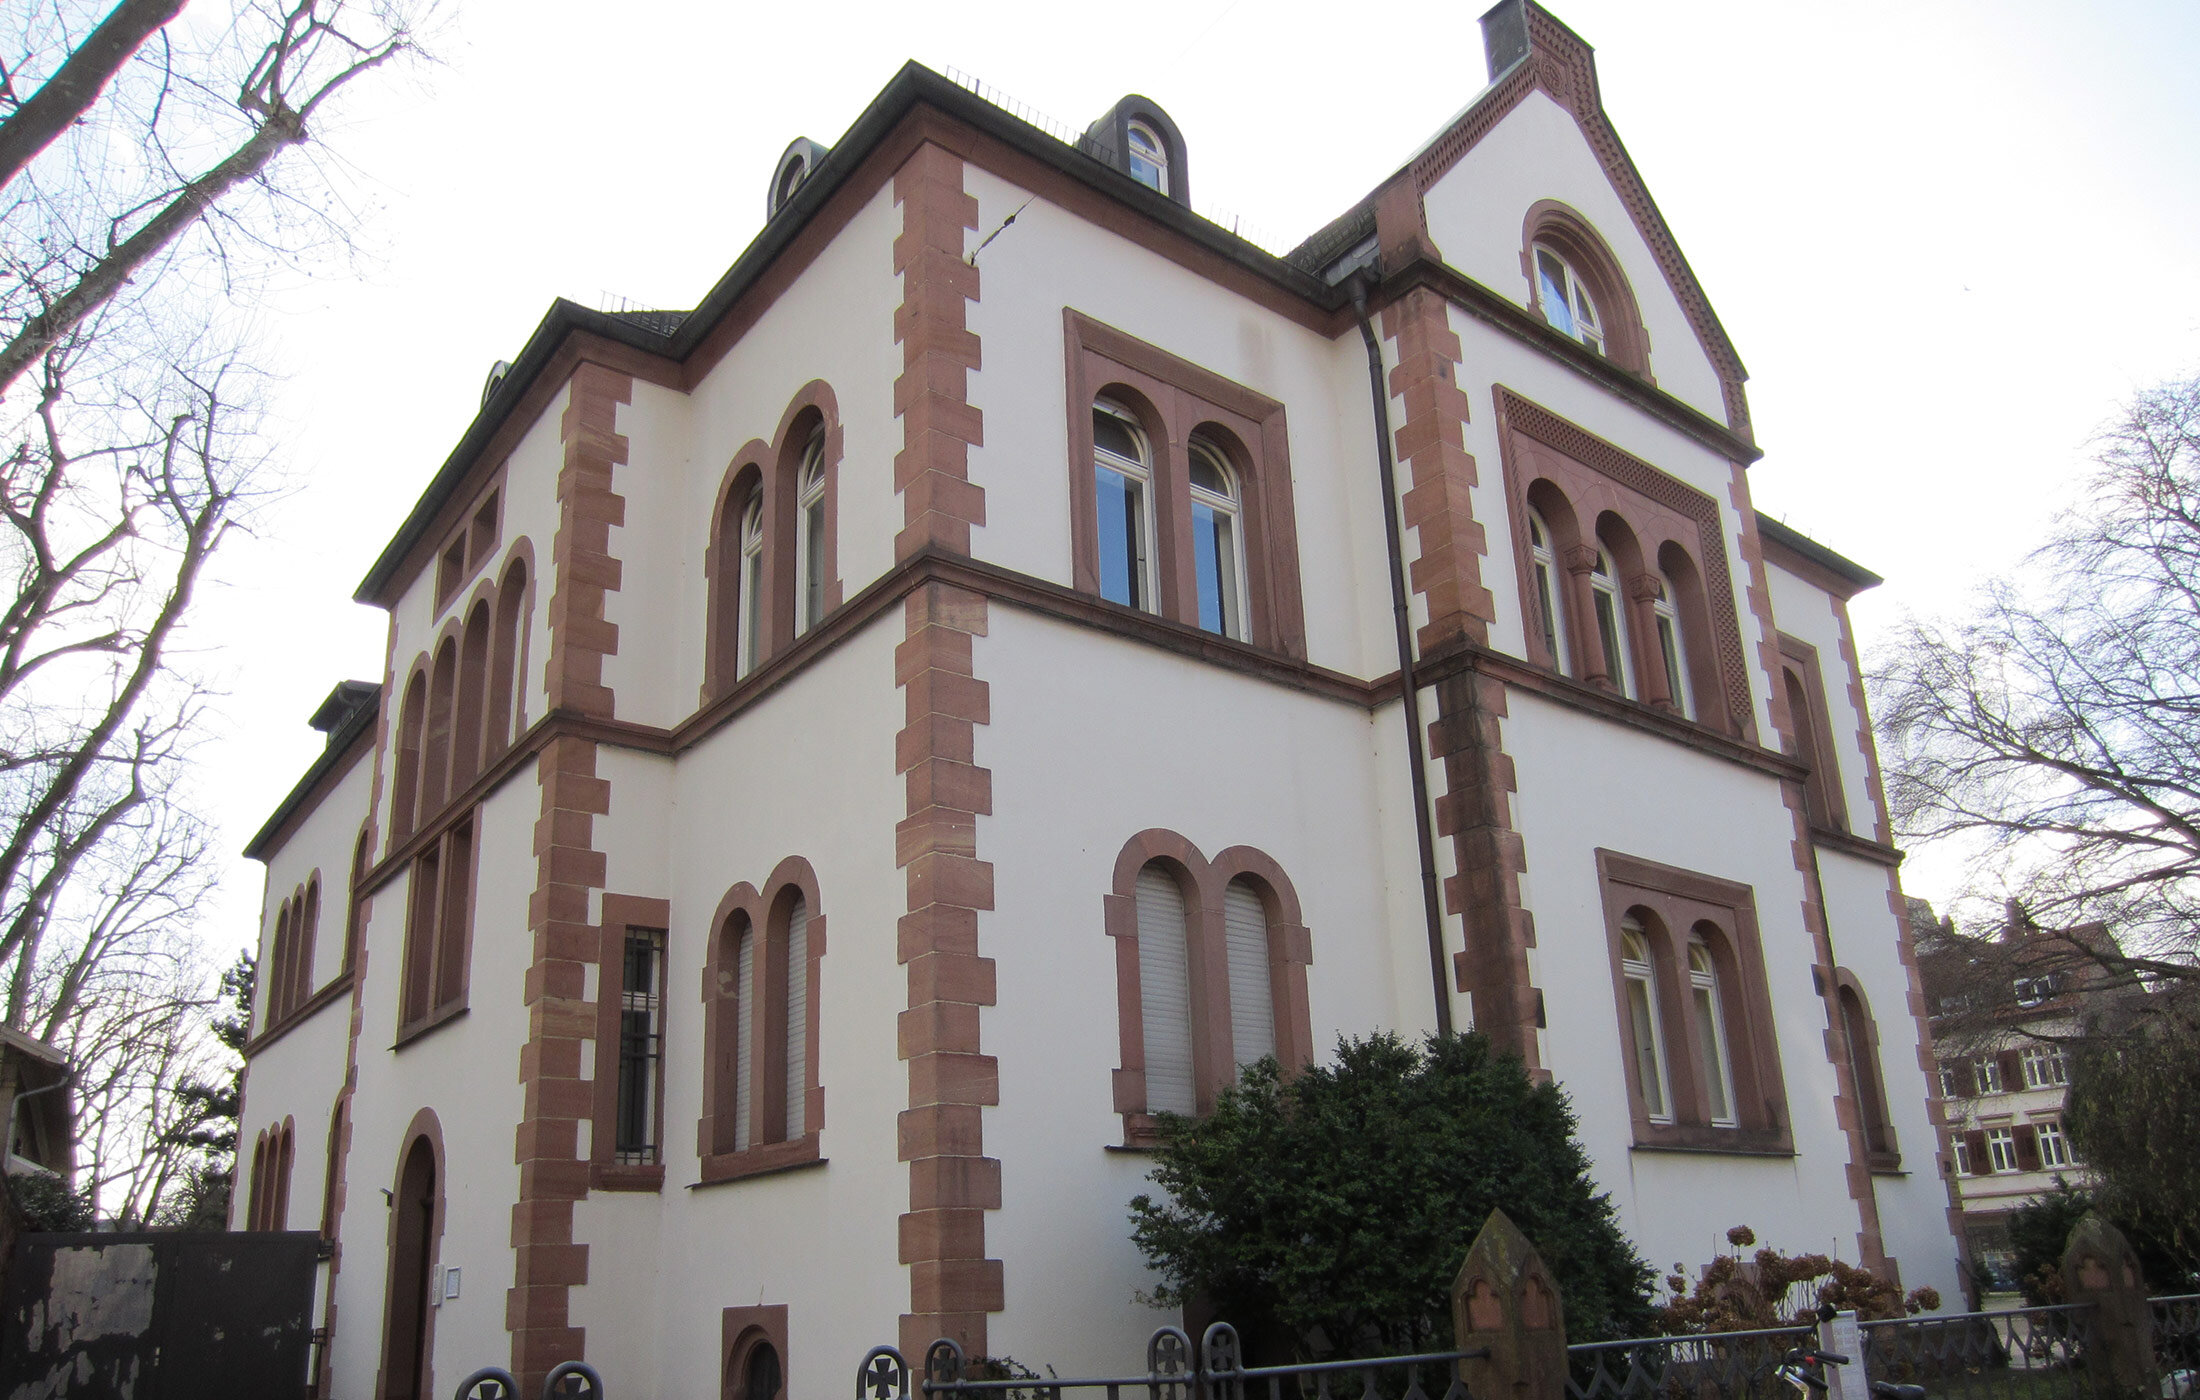 2017, Immobilienkonzept für die katholische Kirche Heidelberg